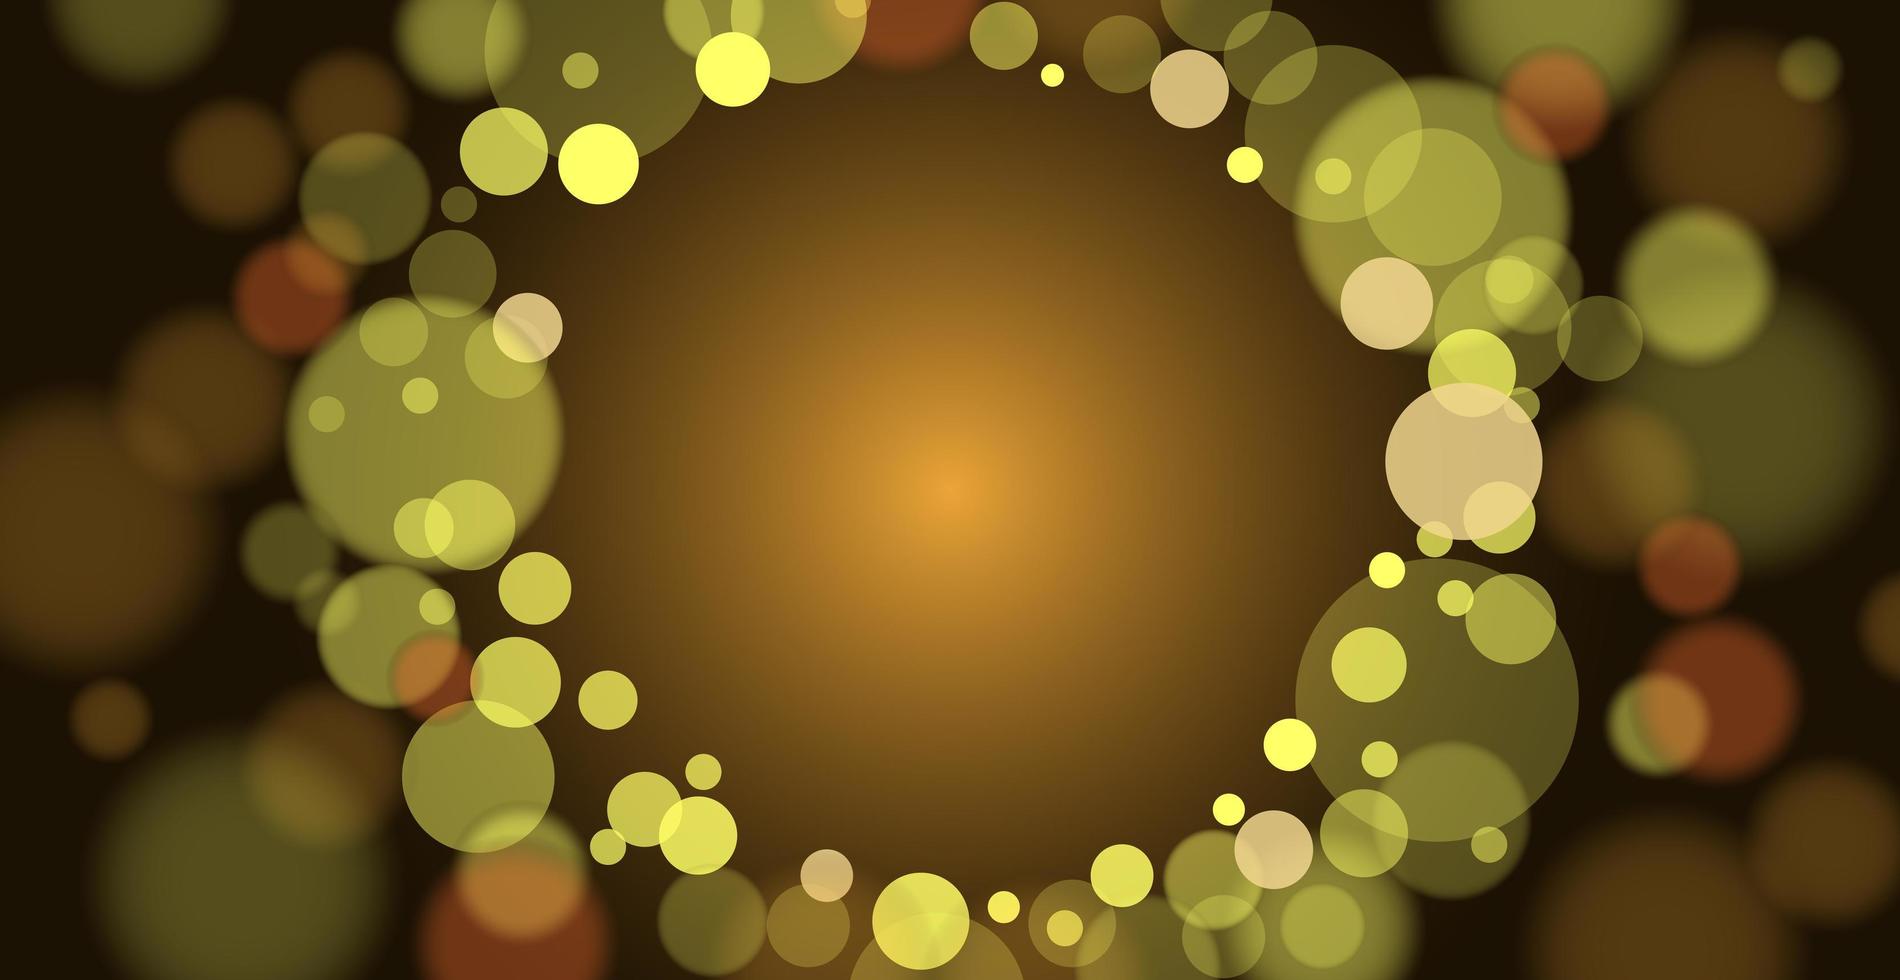 abstrait bokeh multicolore avec des cercles défocalisés et des paillettes. élément de décoration pour les vacances de noël et du nouvel an, cartes de voeux, bannières web, affiches - image vectorielle vecteur